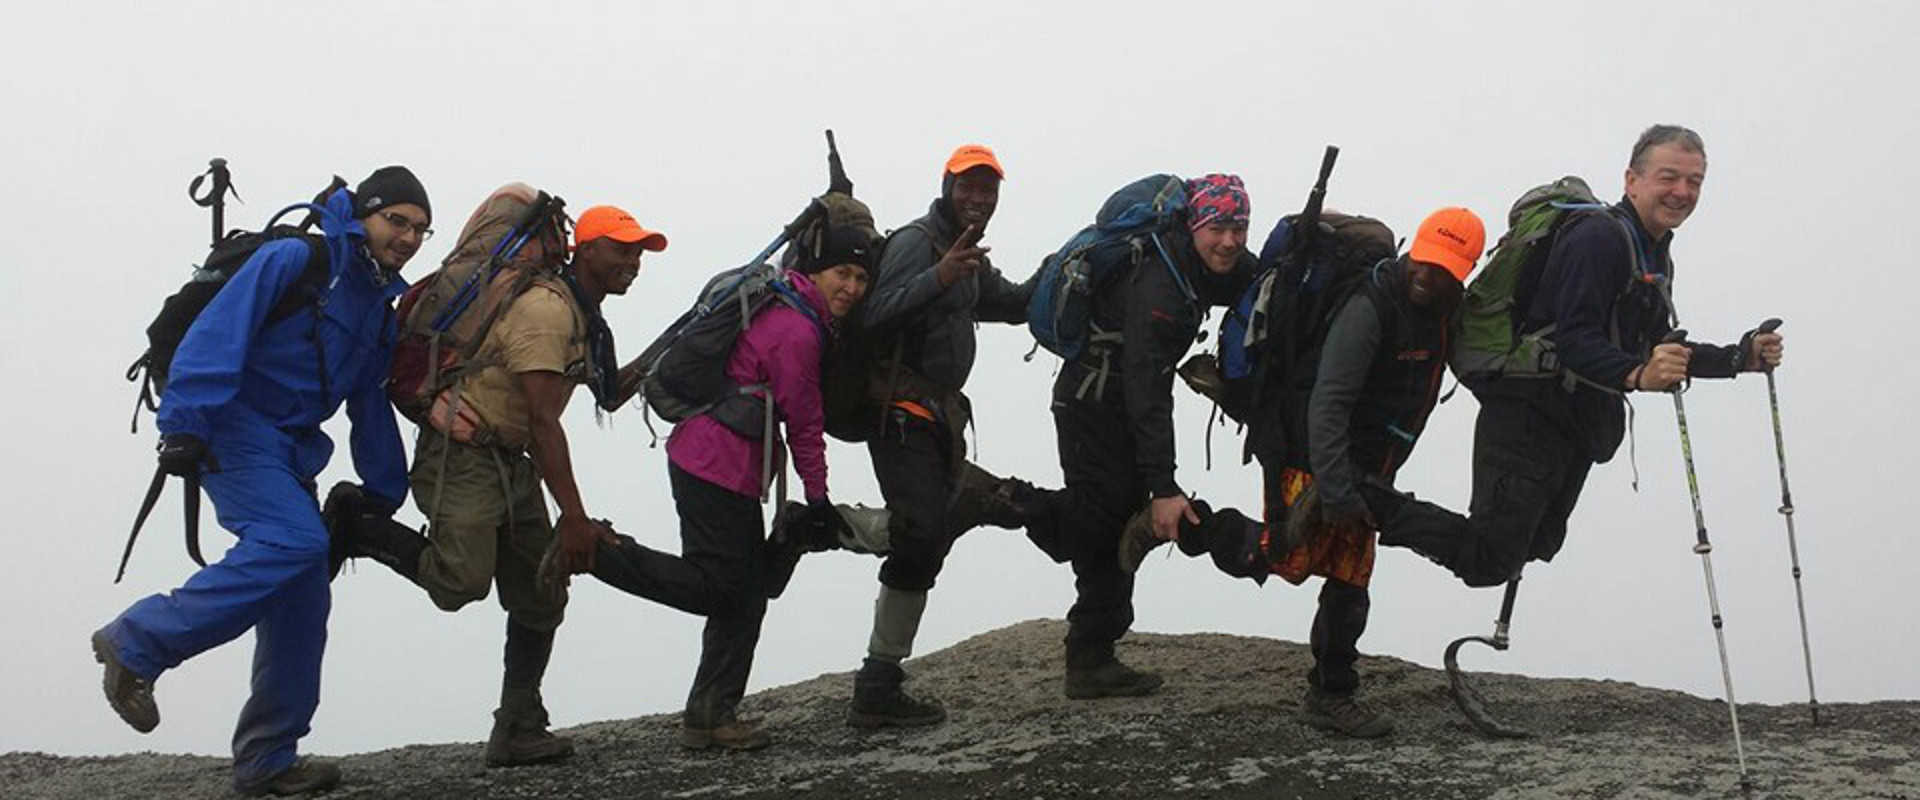 Amputee summits Kilimanjaro